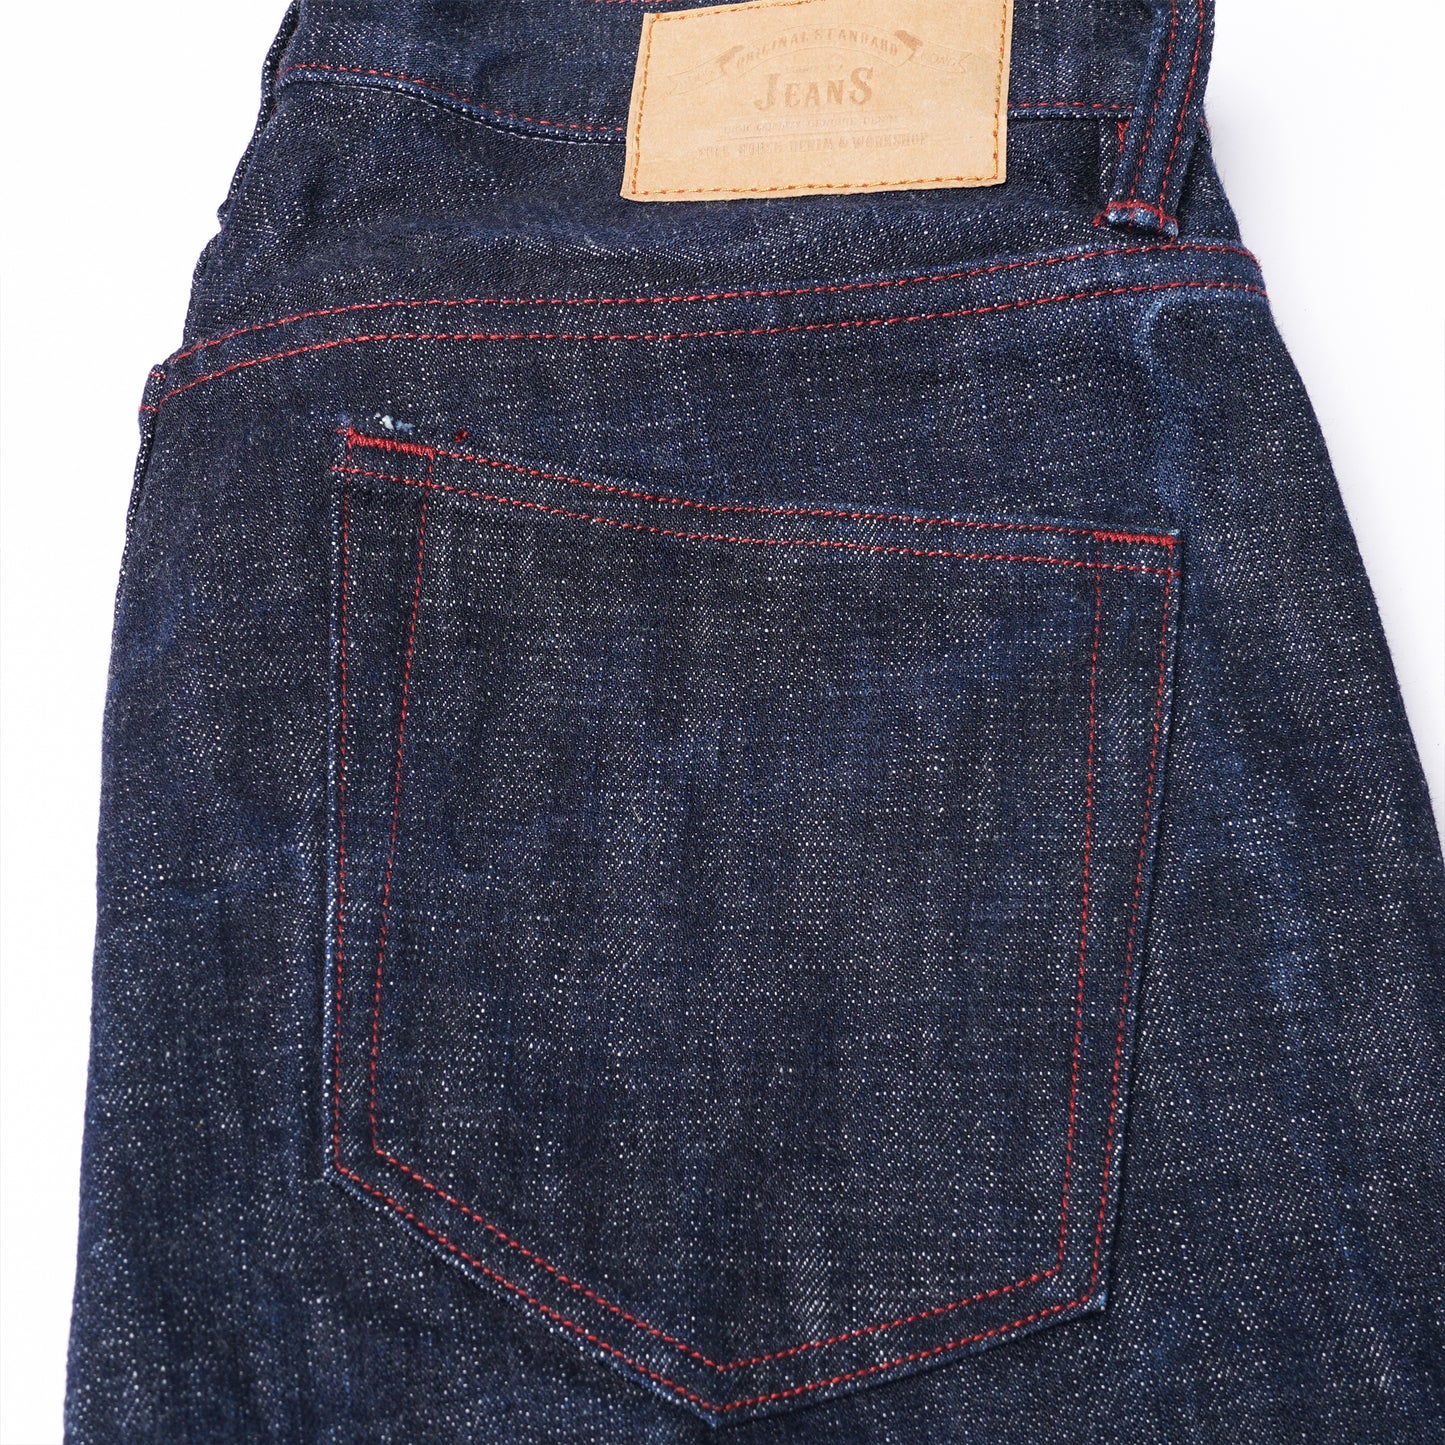 【Custom】H291 18oz. Kaihara Denim Straight Cut Jeans